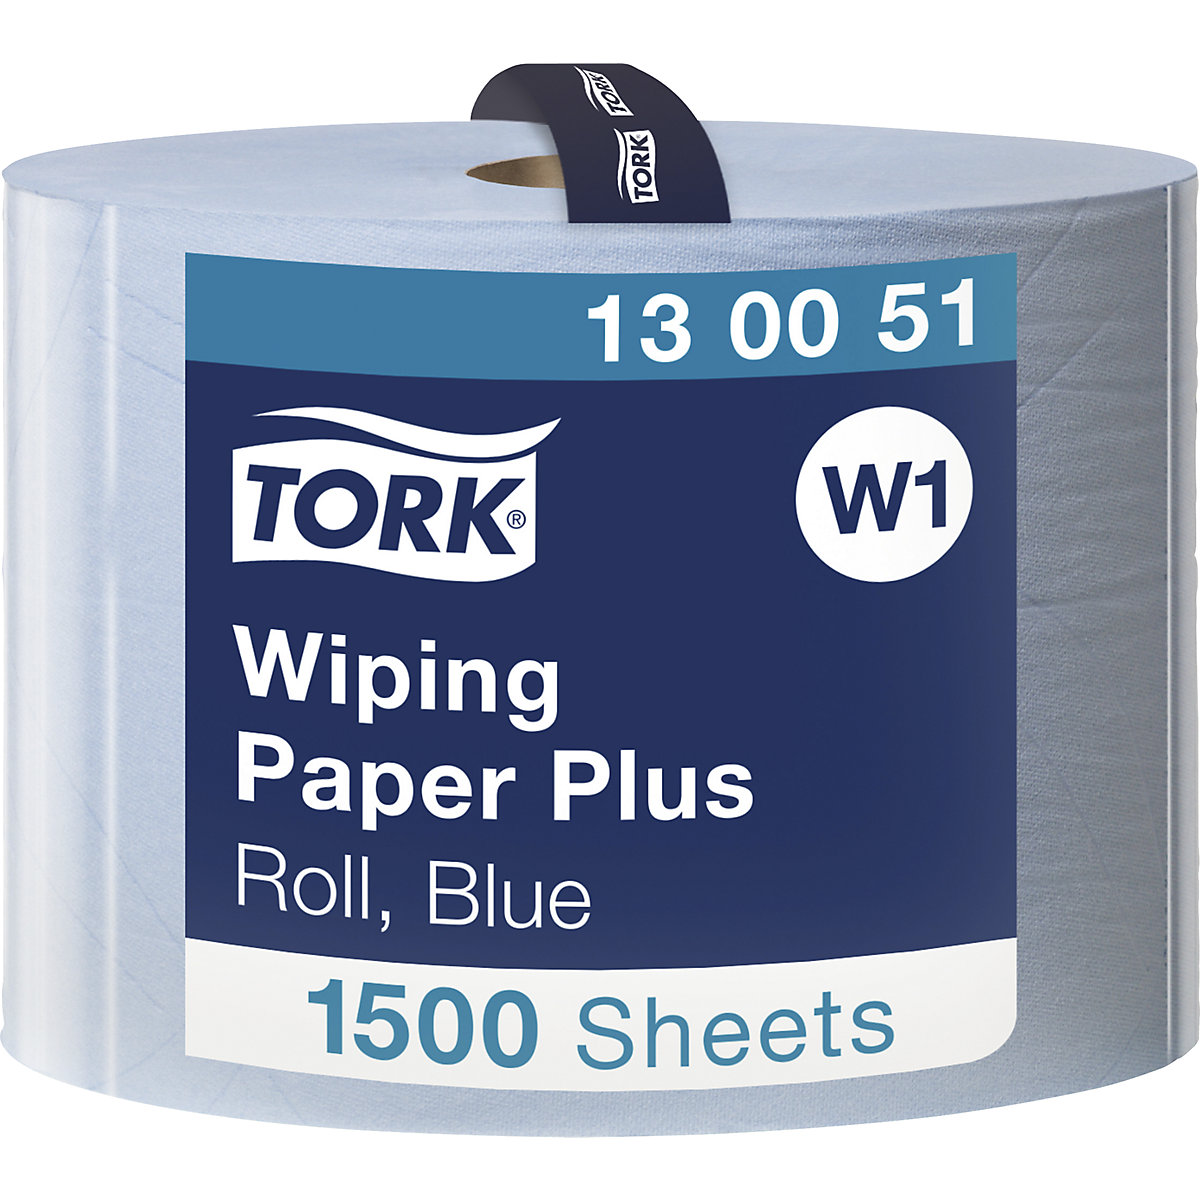 Multifunctionele papieren doekjes, sterk – TORK